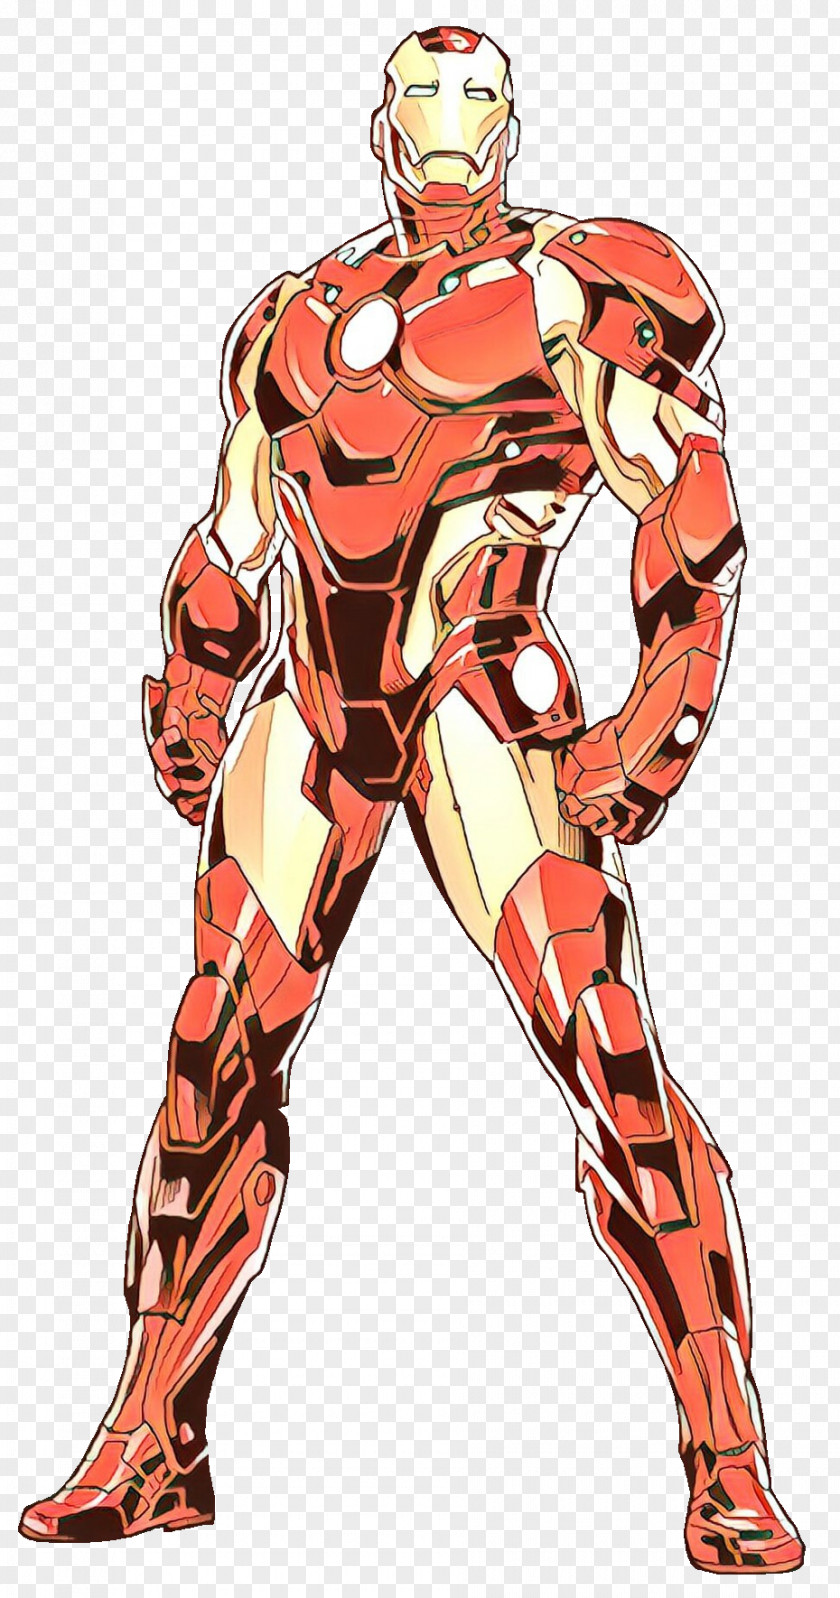 Iron Man Extremis War Machine Hulk Superhero PNG